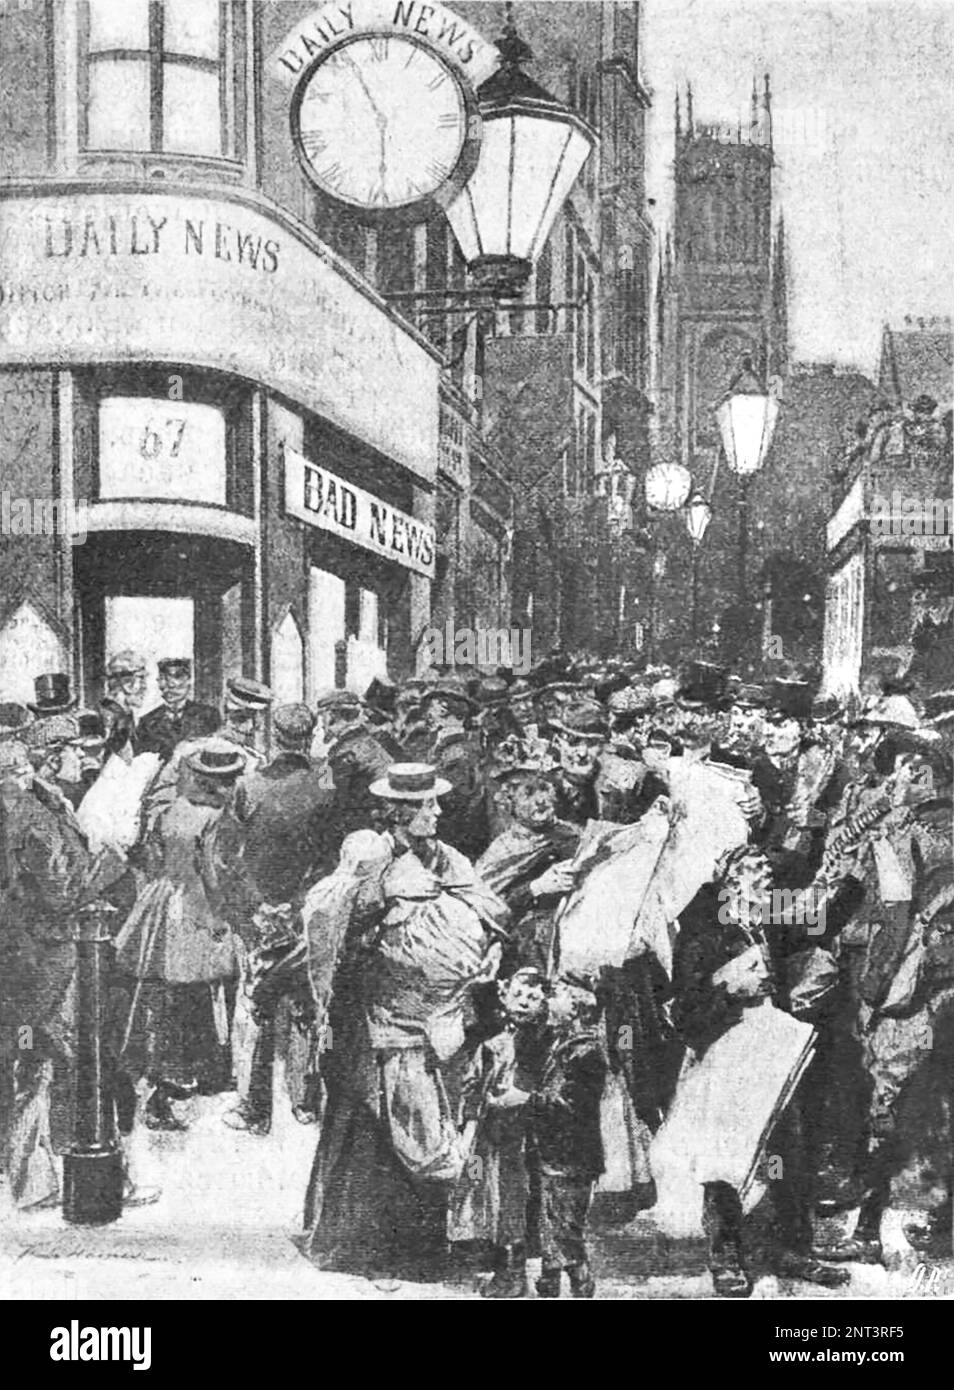 Une foule de gens dans les rues de Londres devant les « Daily News », qui ont d'abord publié un télégramme sur la victoire des Boers et la capture du général Methuen. Illustration de 1902. Banque D'Images